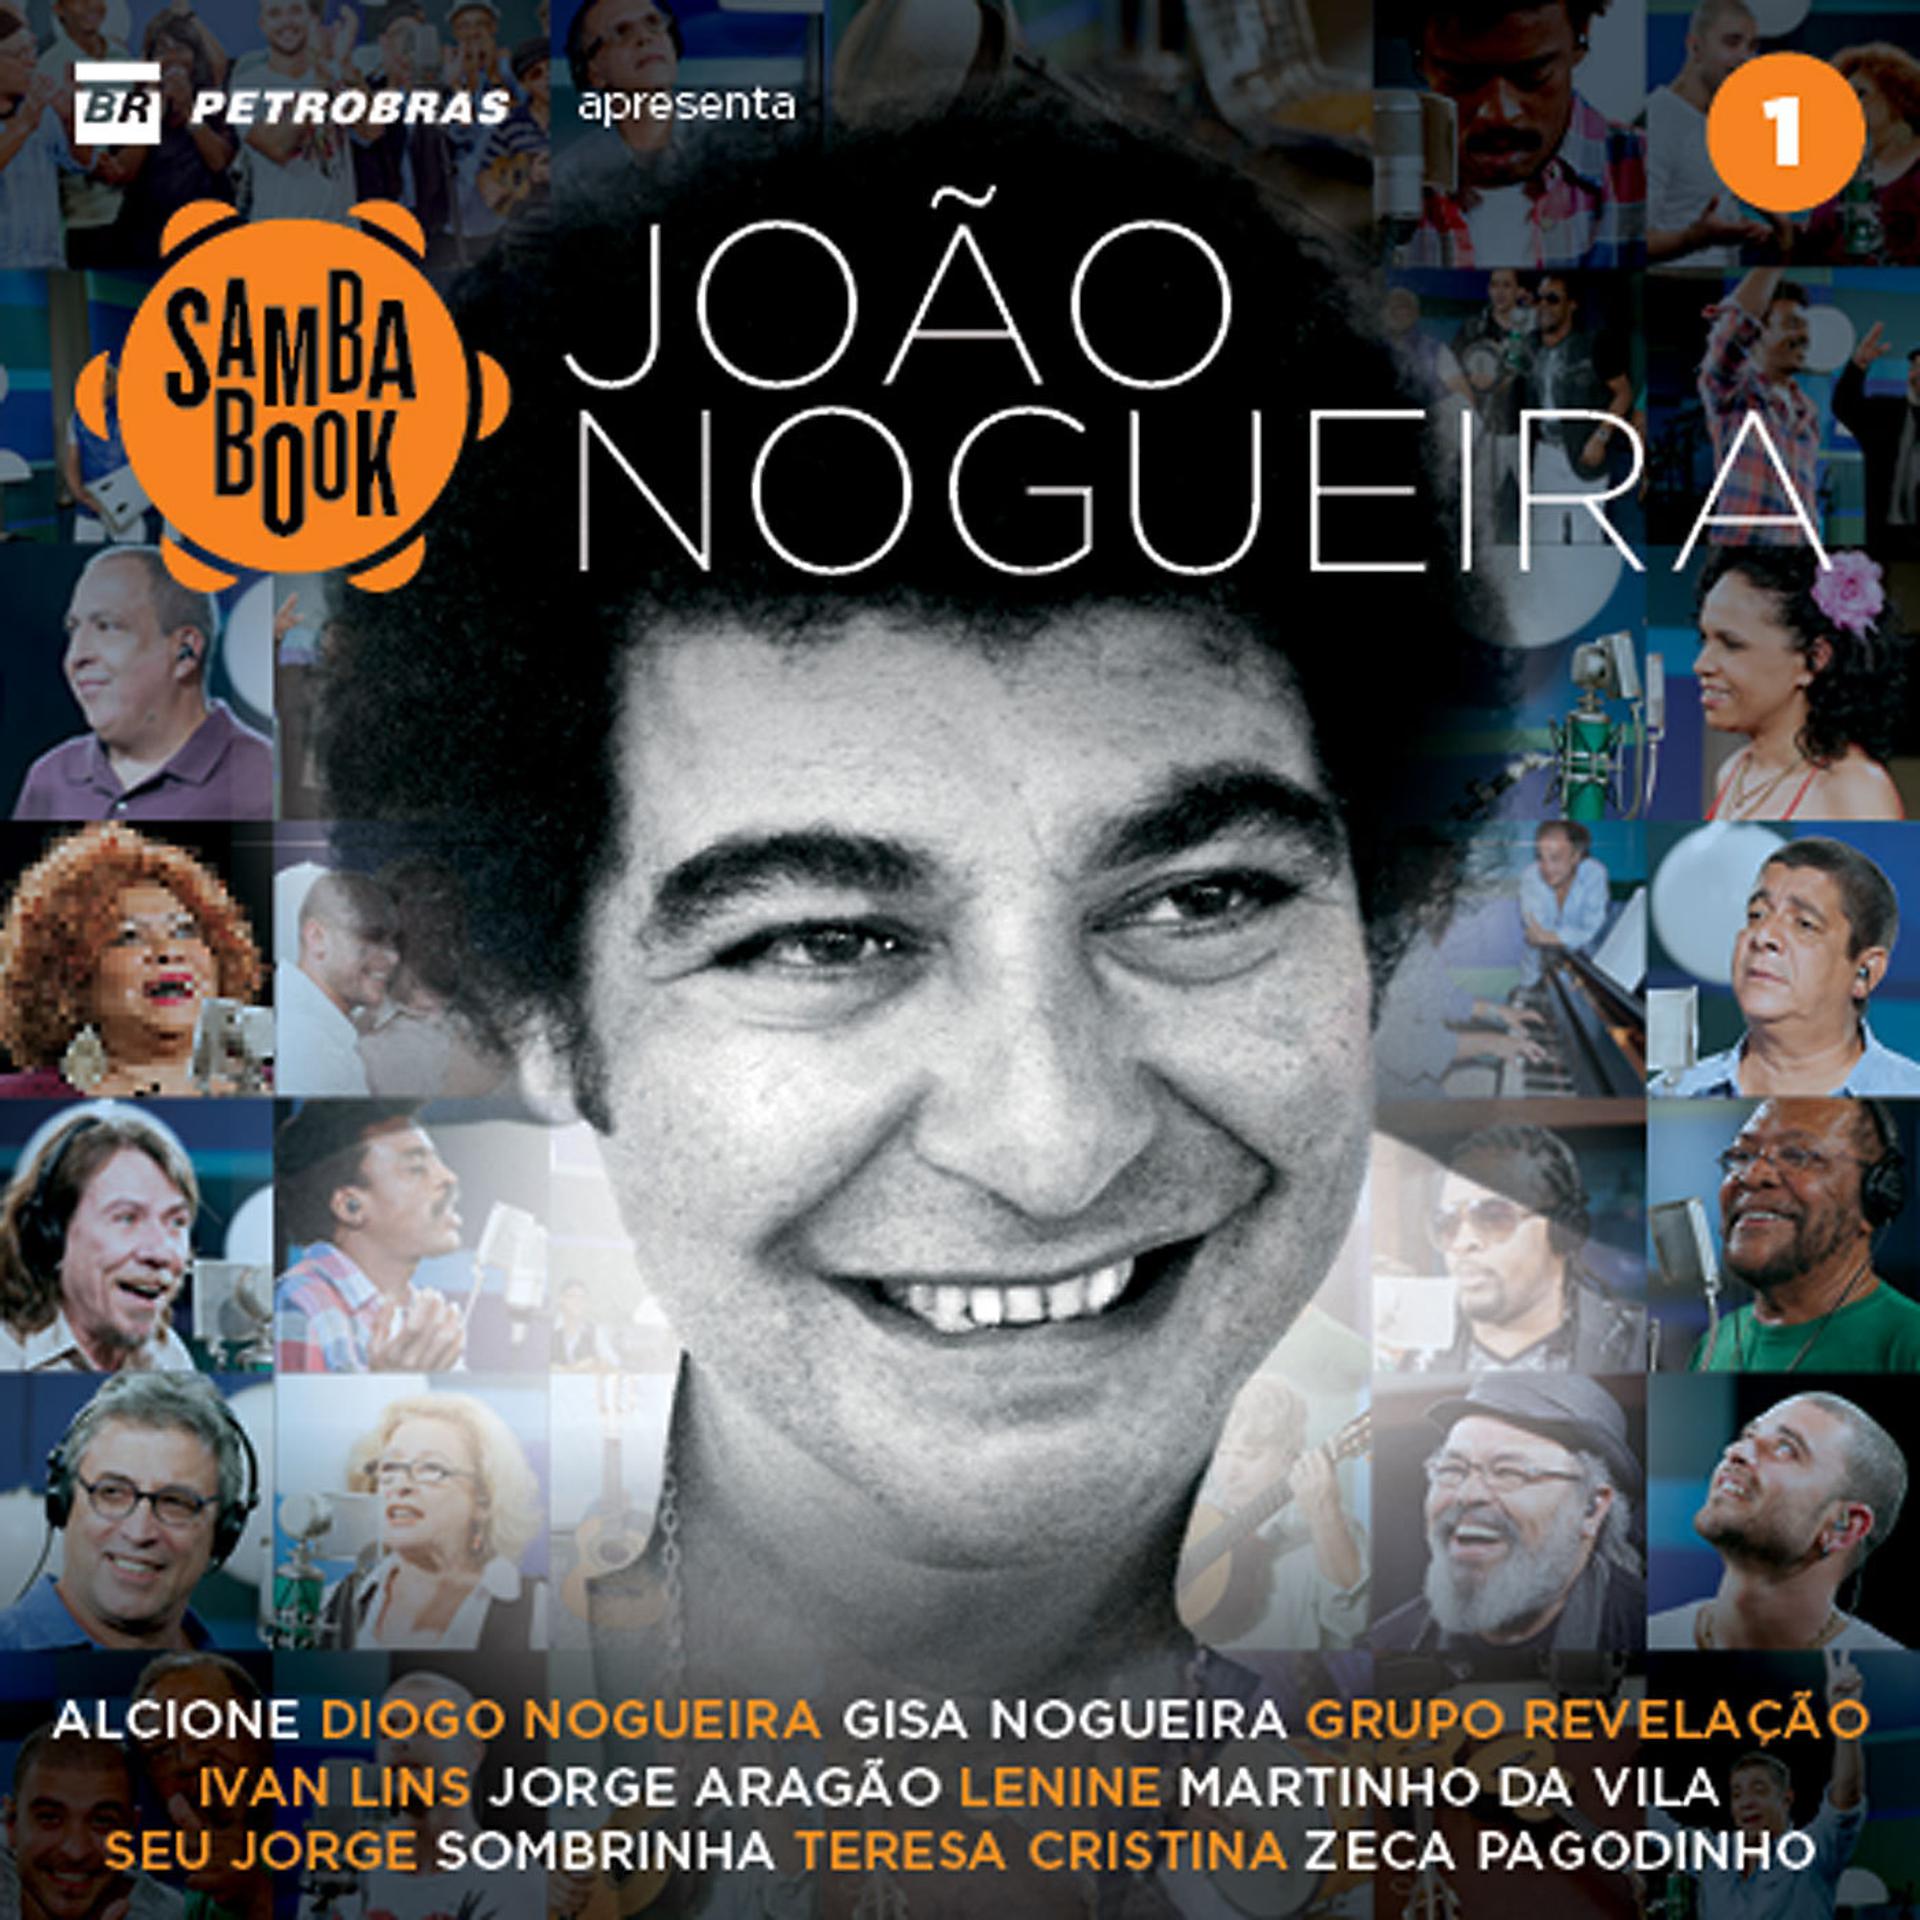 Постер альбома Sambabook João Nogueira, 1